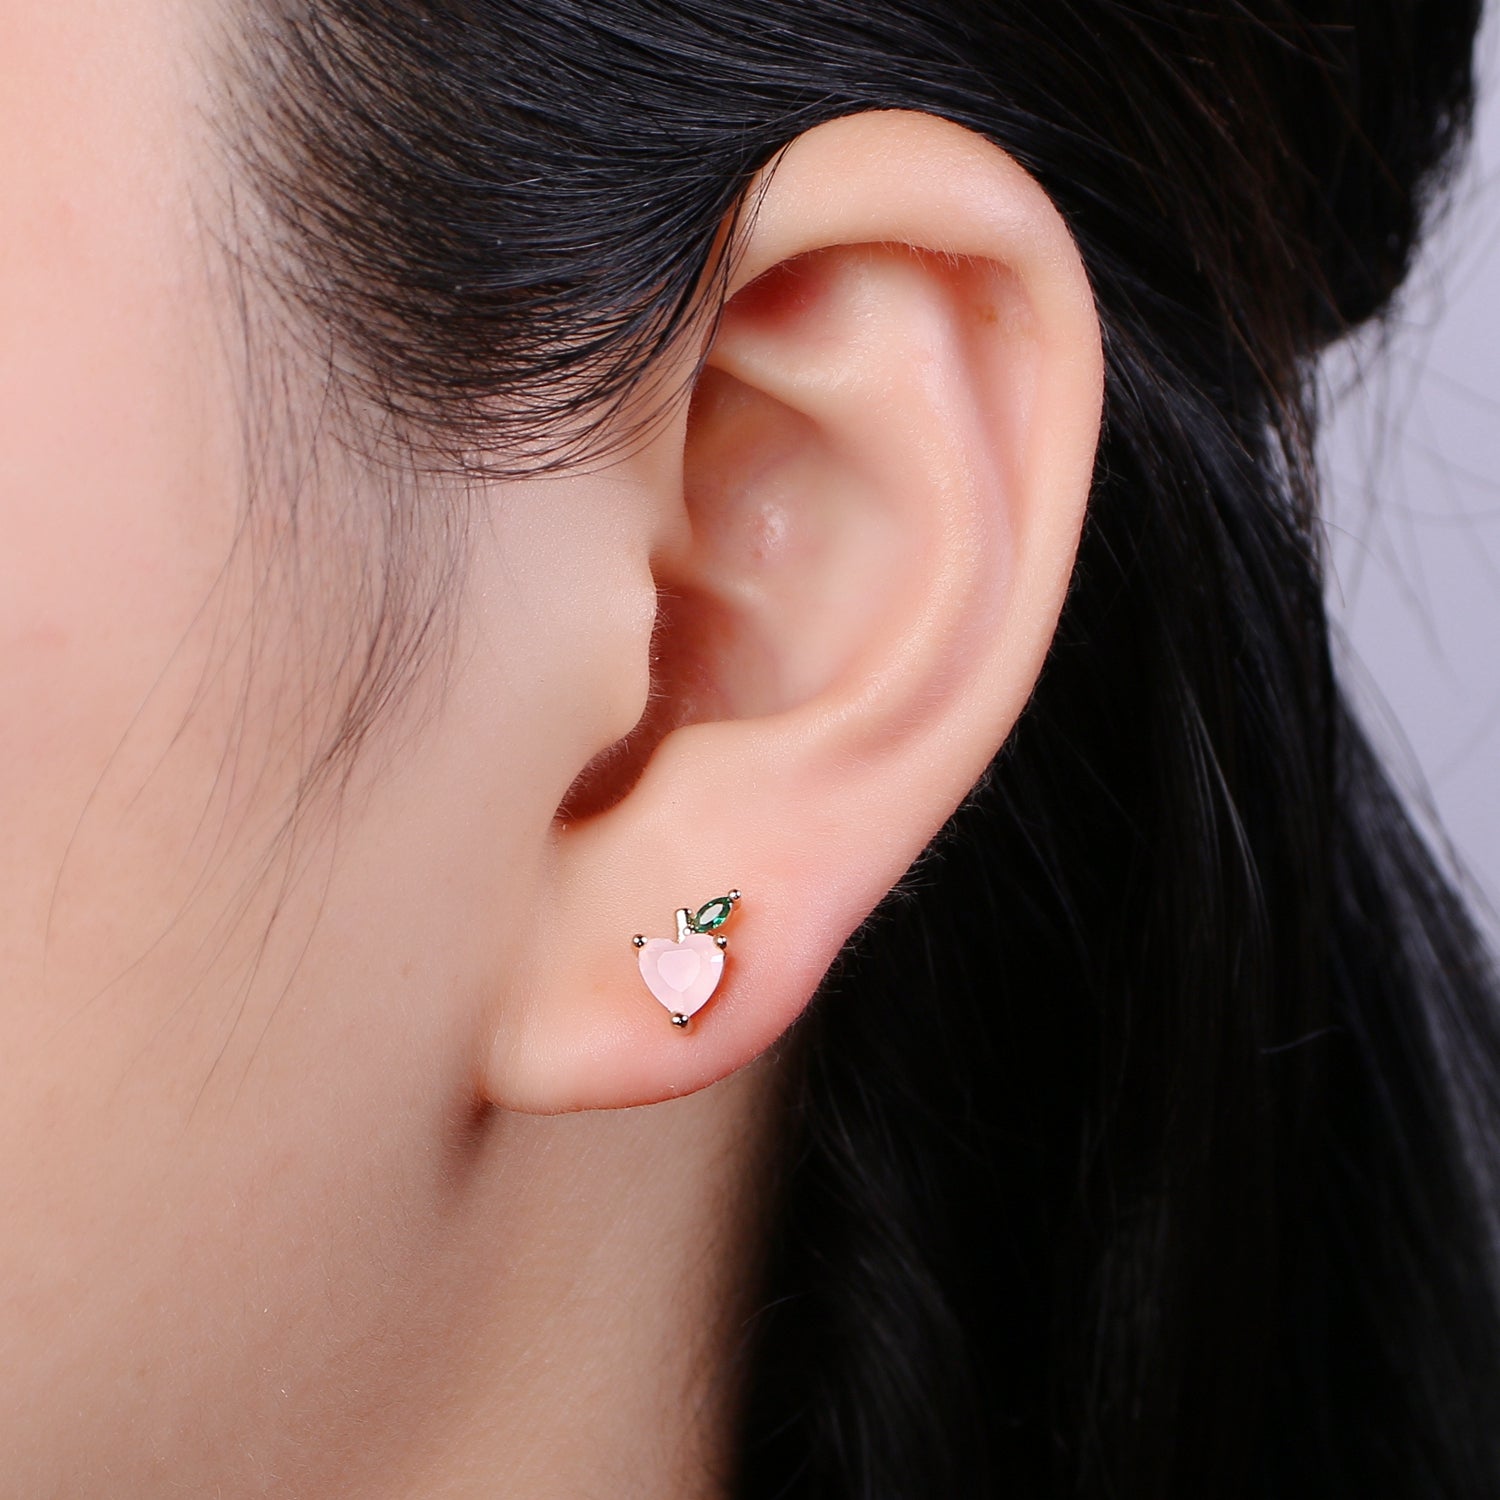 Gold Peach Stud Earring, Crystal Berry Studs, Pink Heart Fruit Earring, Minimalist Earring, Dainty Earrings for Girls Gift - DLUXCA